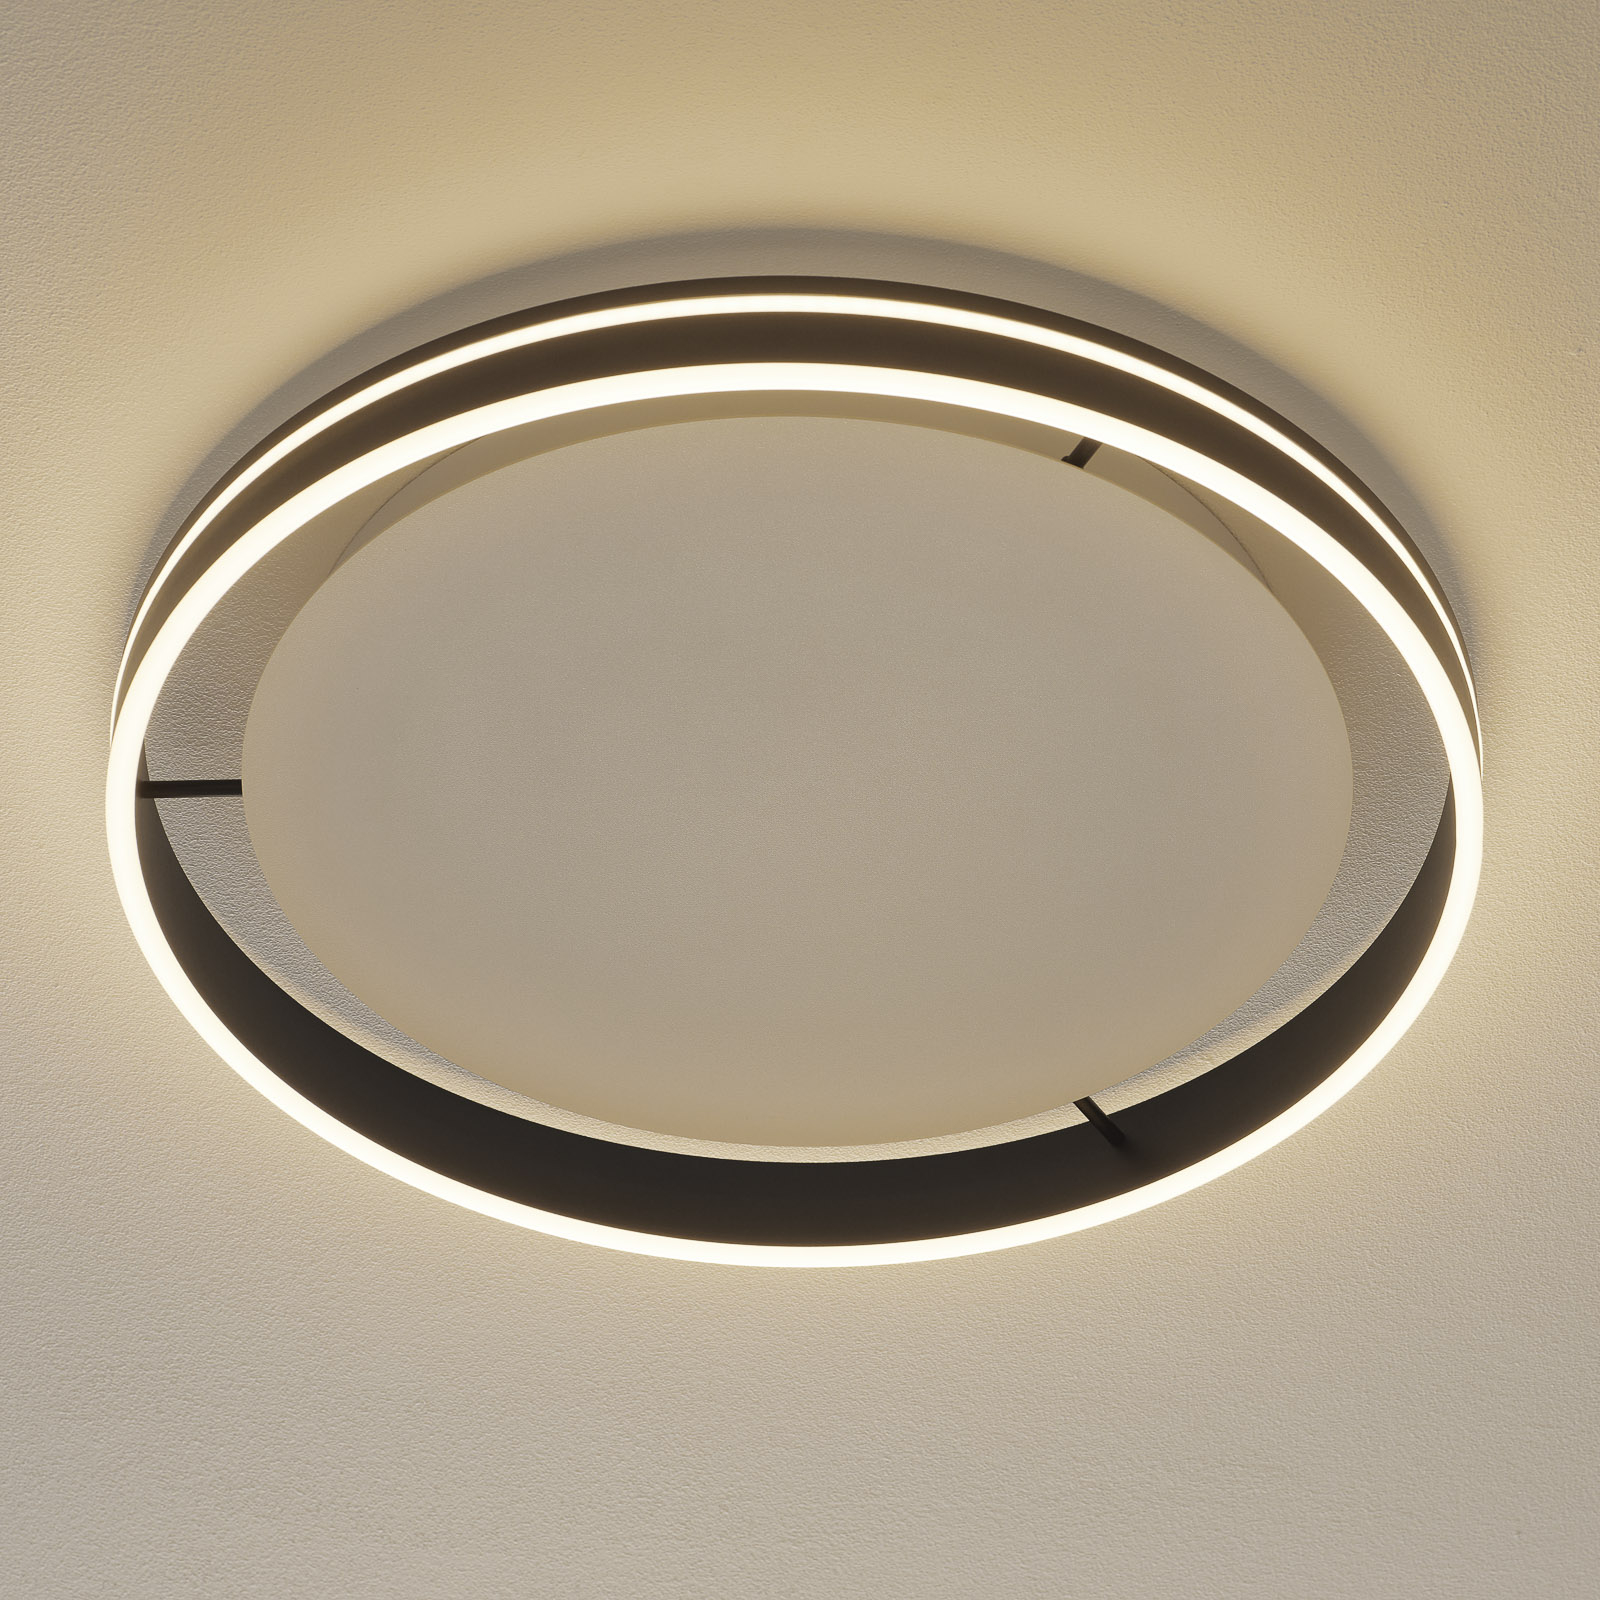 Paul Neuhaus Q-VITO LED-taklampa 59cm antracit